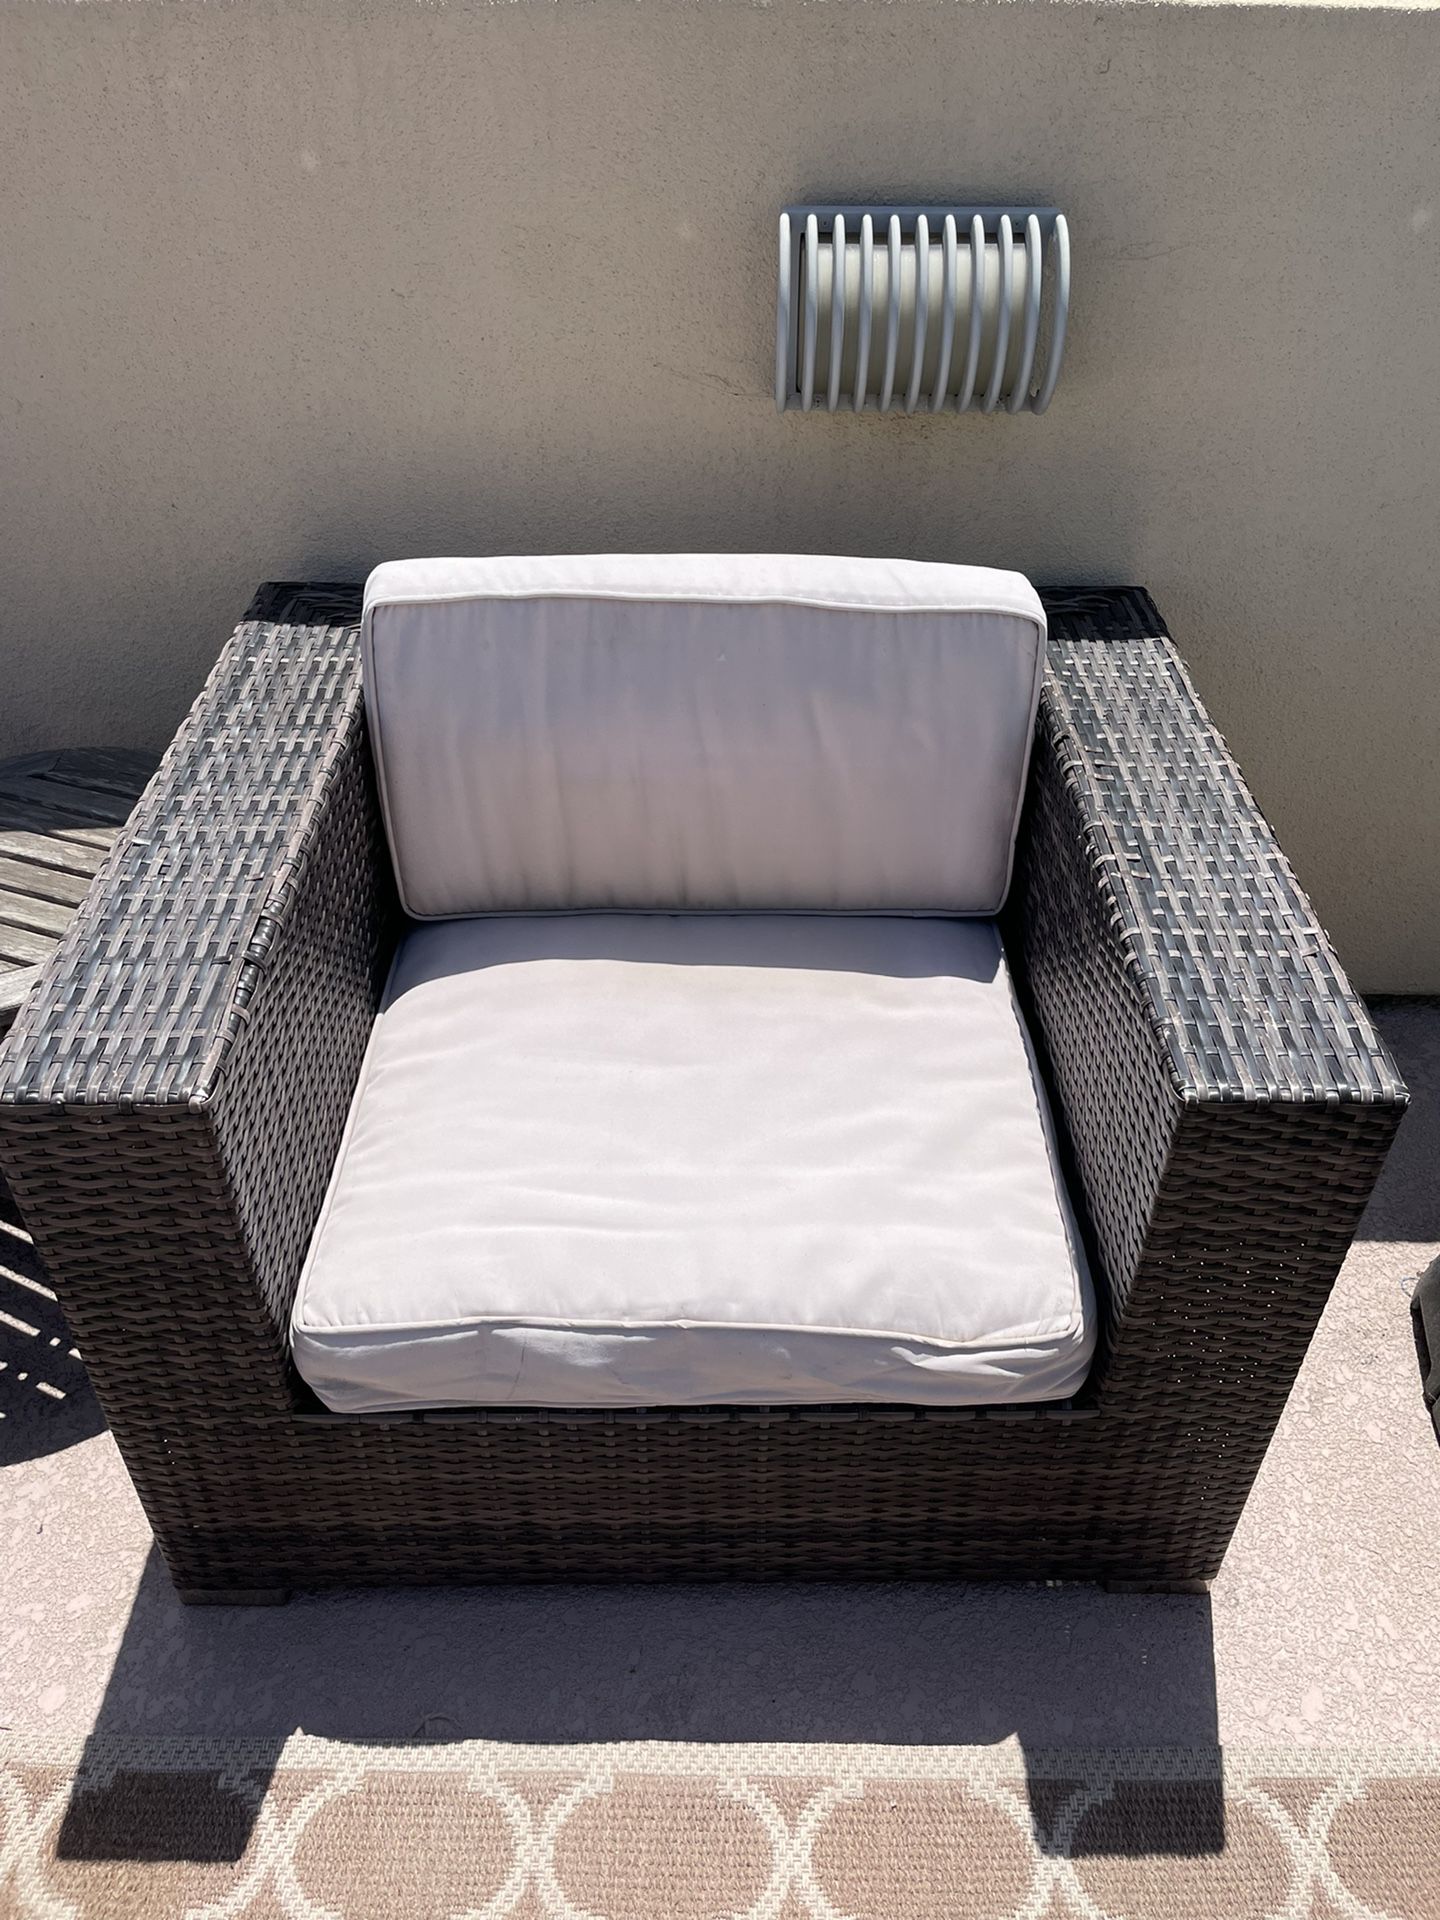 Patio Set - Sofa and Chair And ottoman 